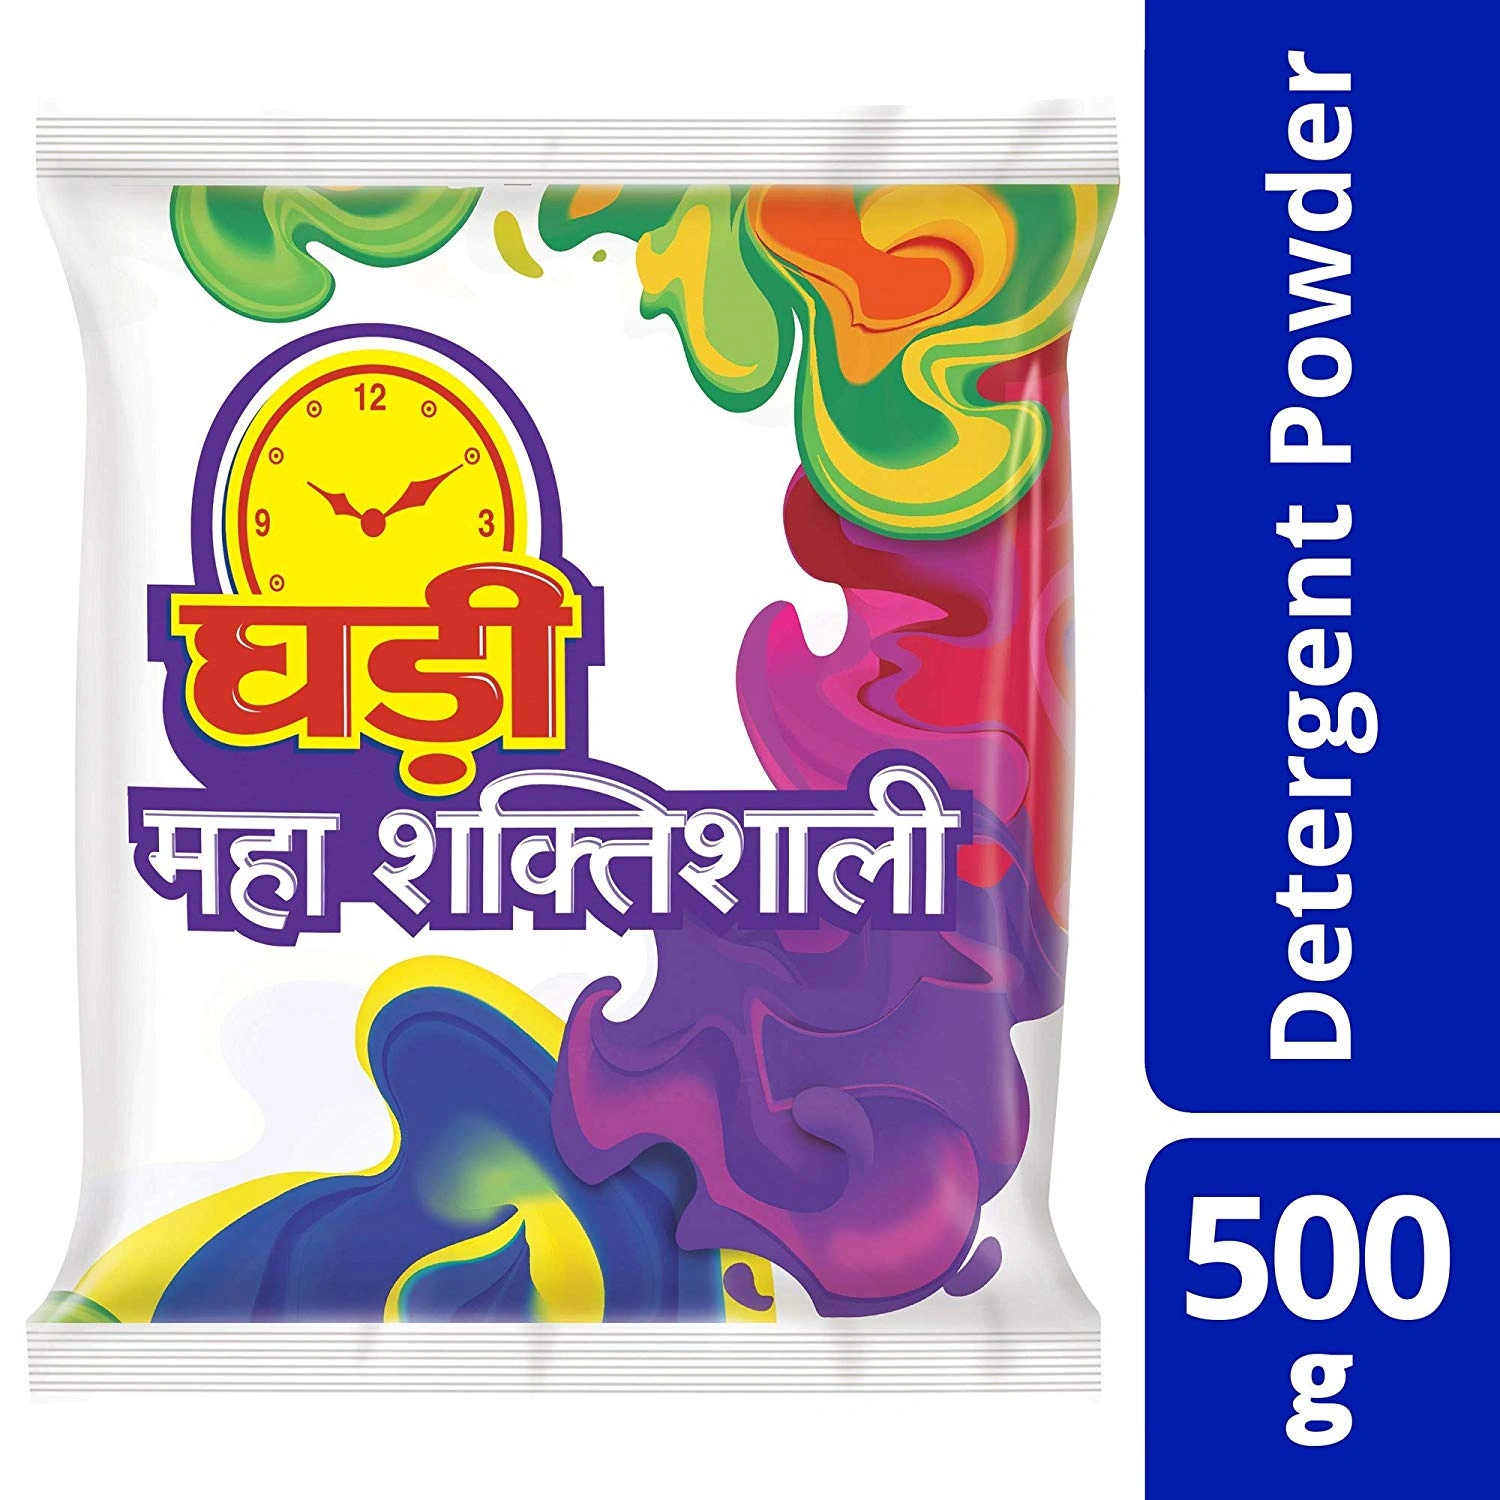 Ghadi Detergent Washing Powder 500g-BM1636